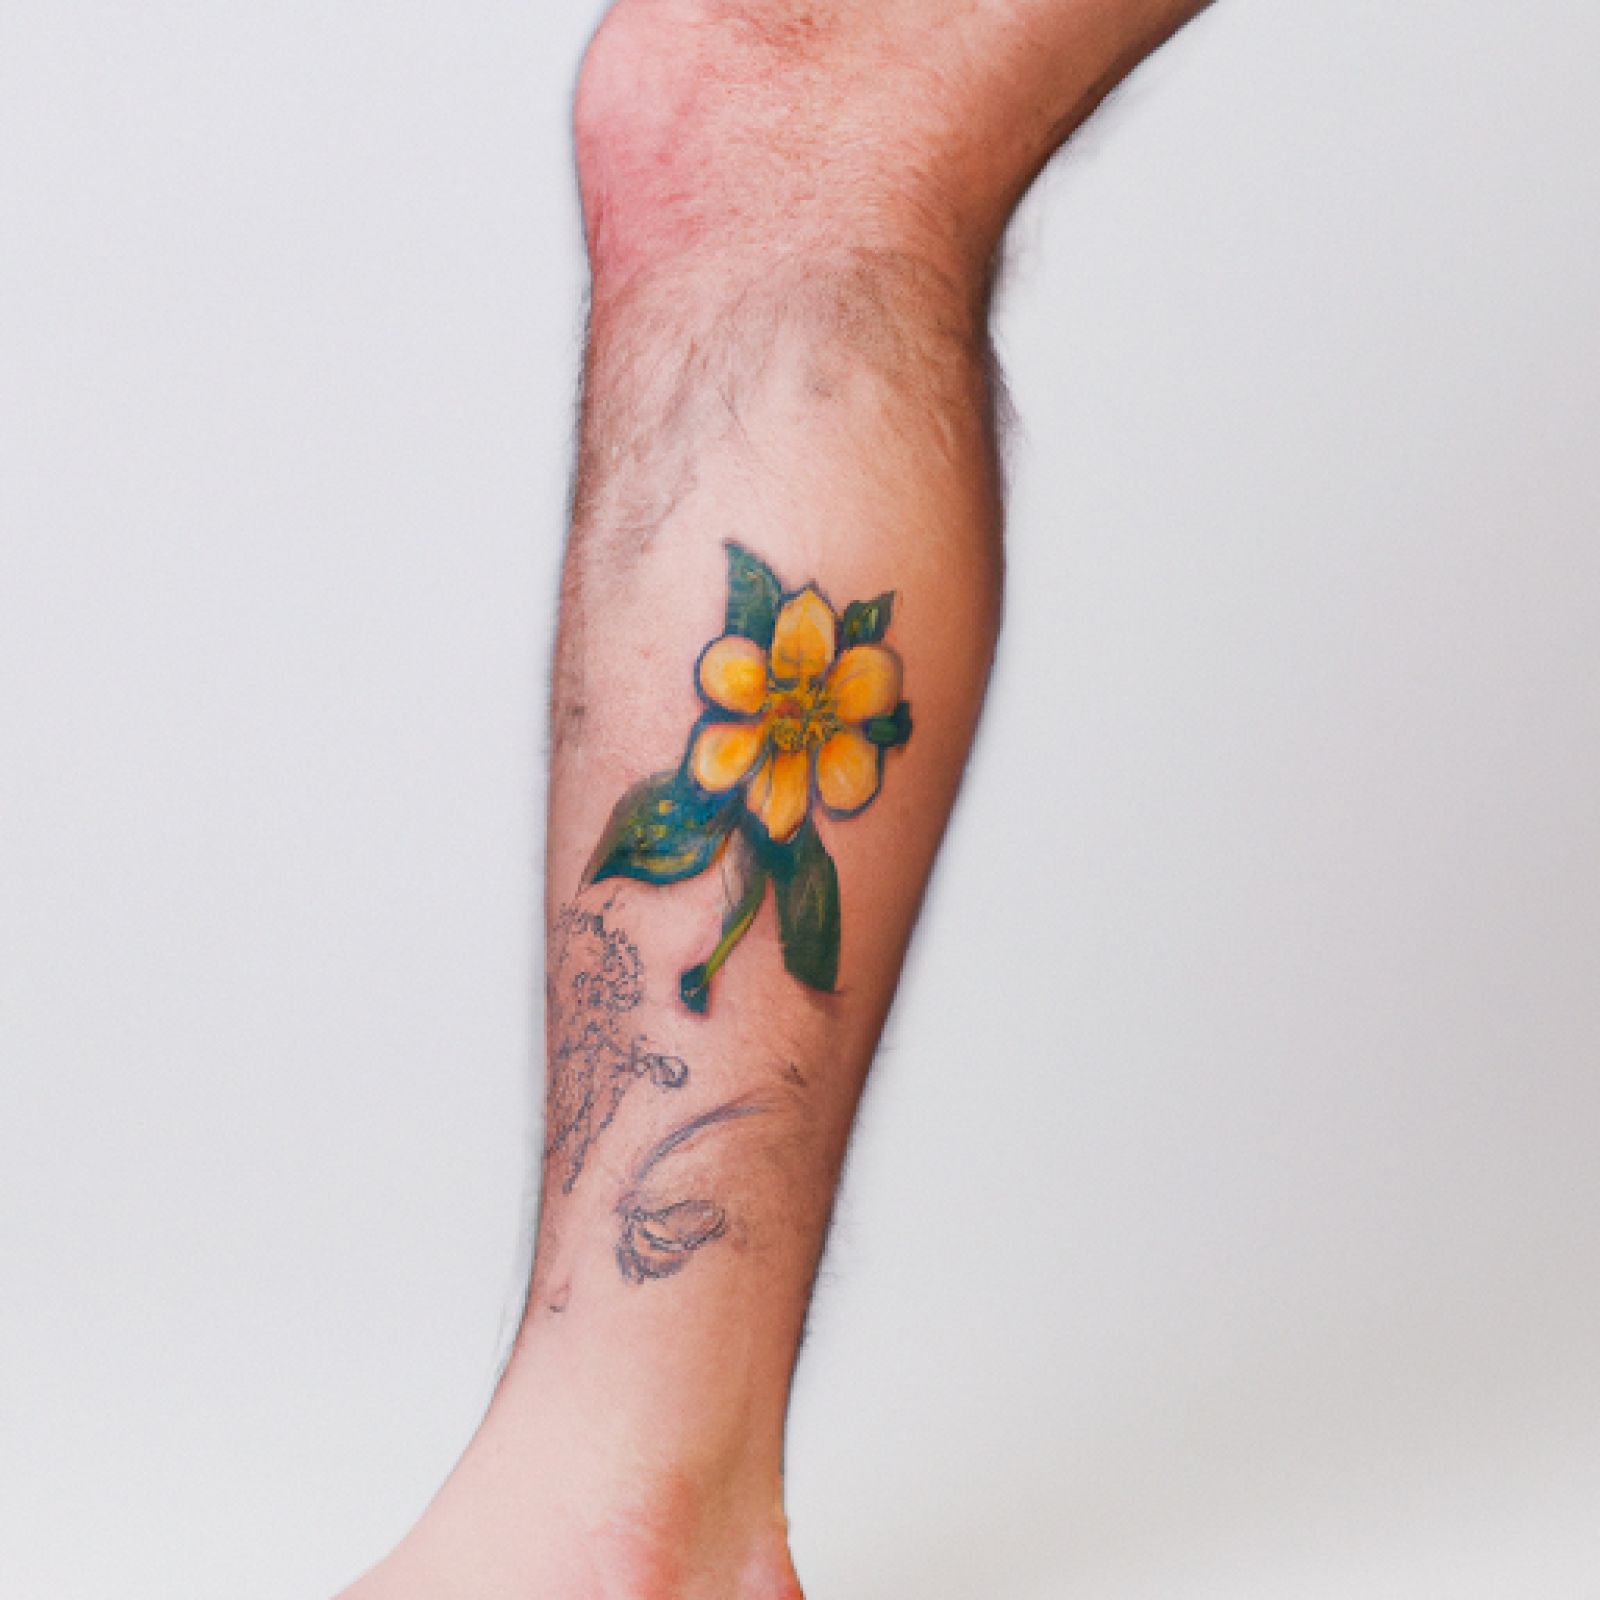 Flower tattoo on leg for men